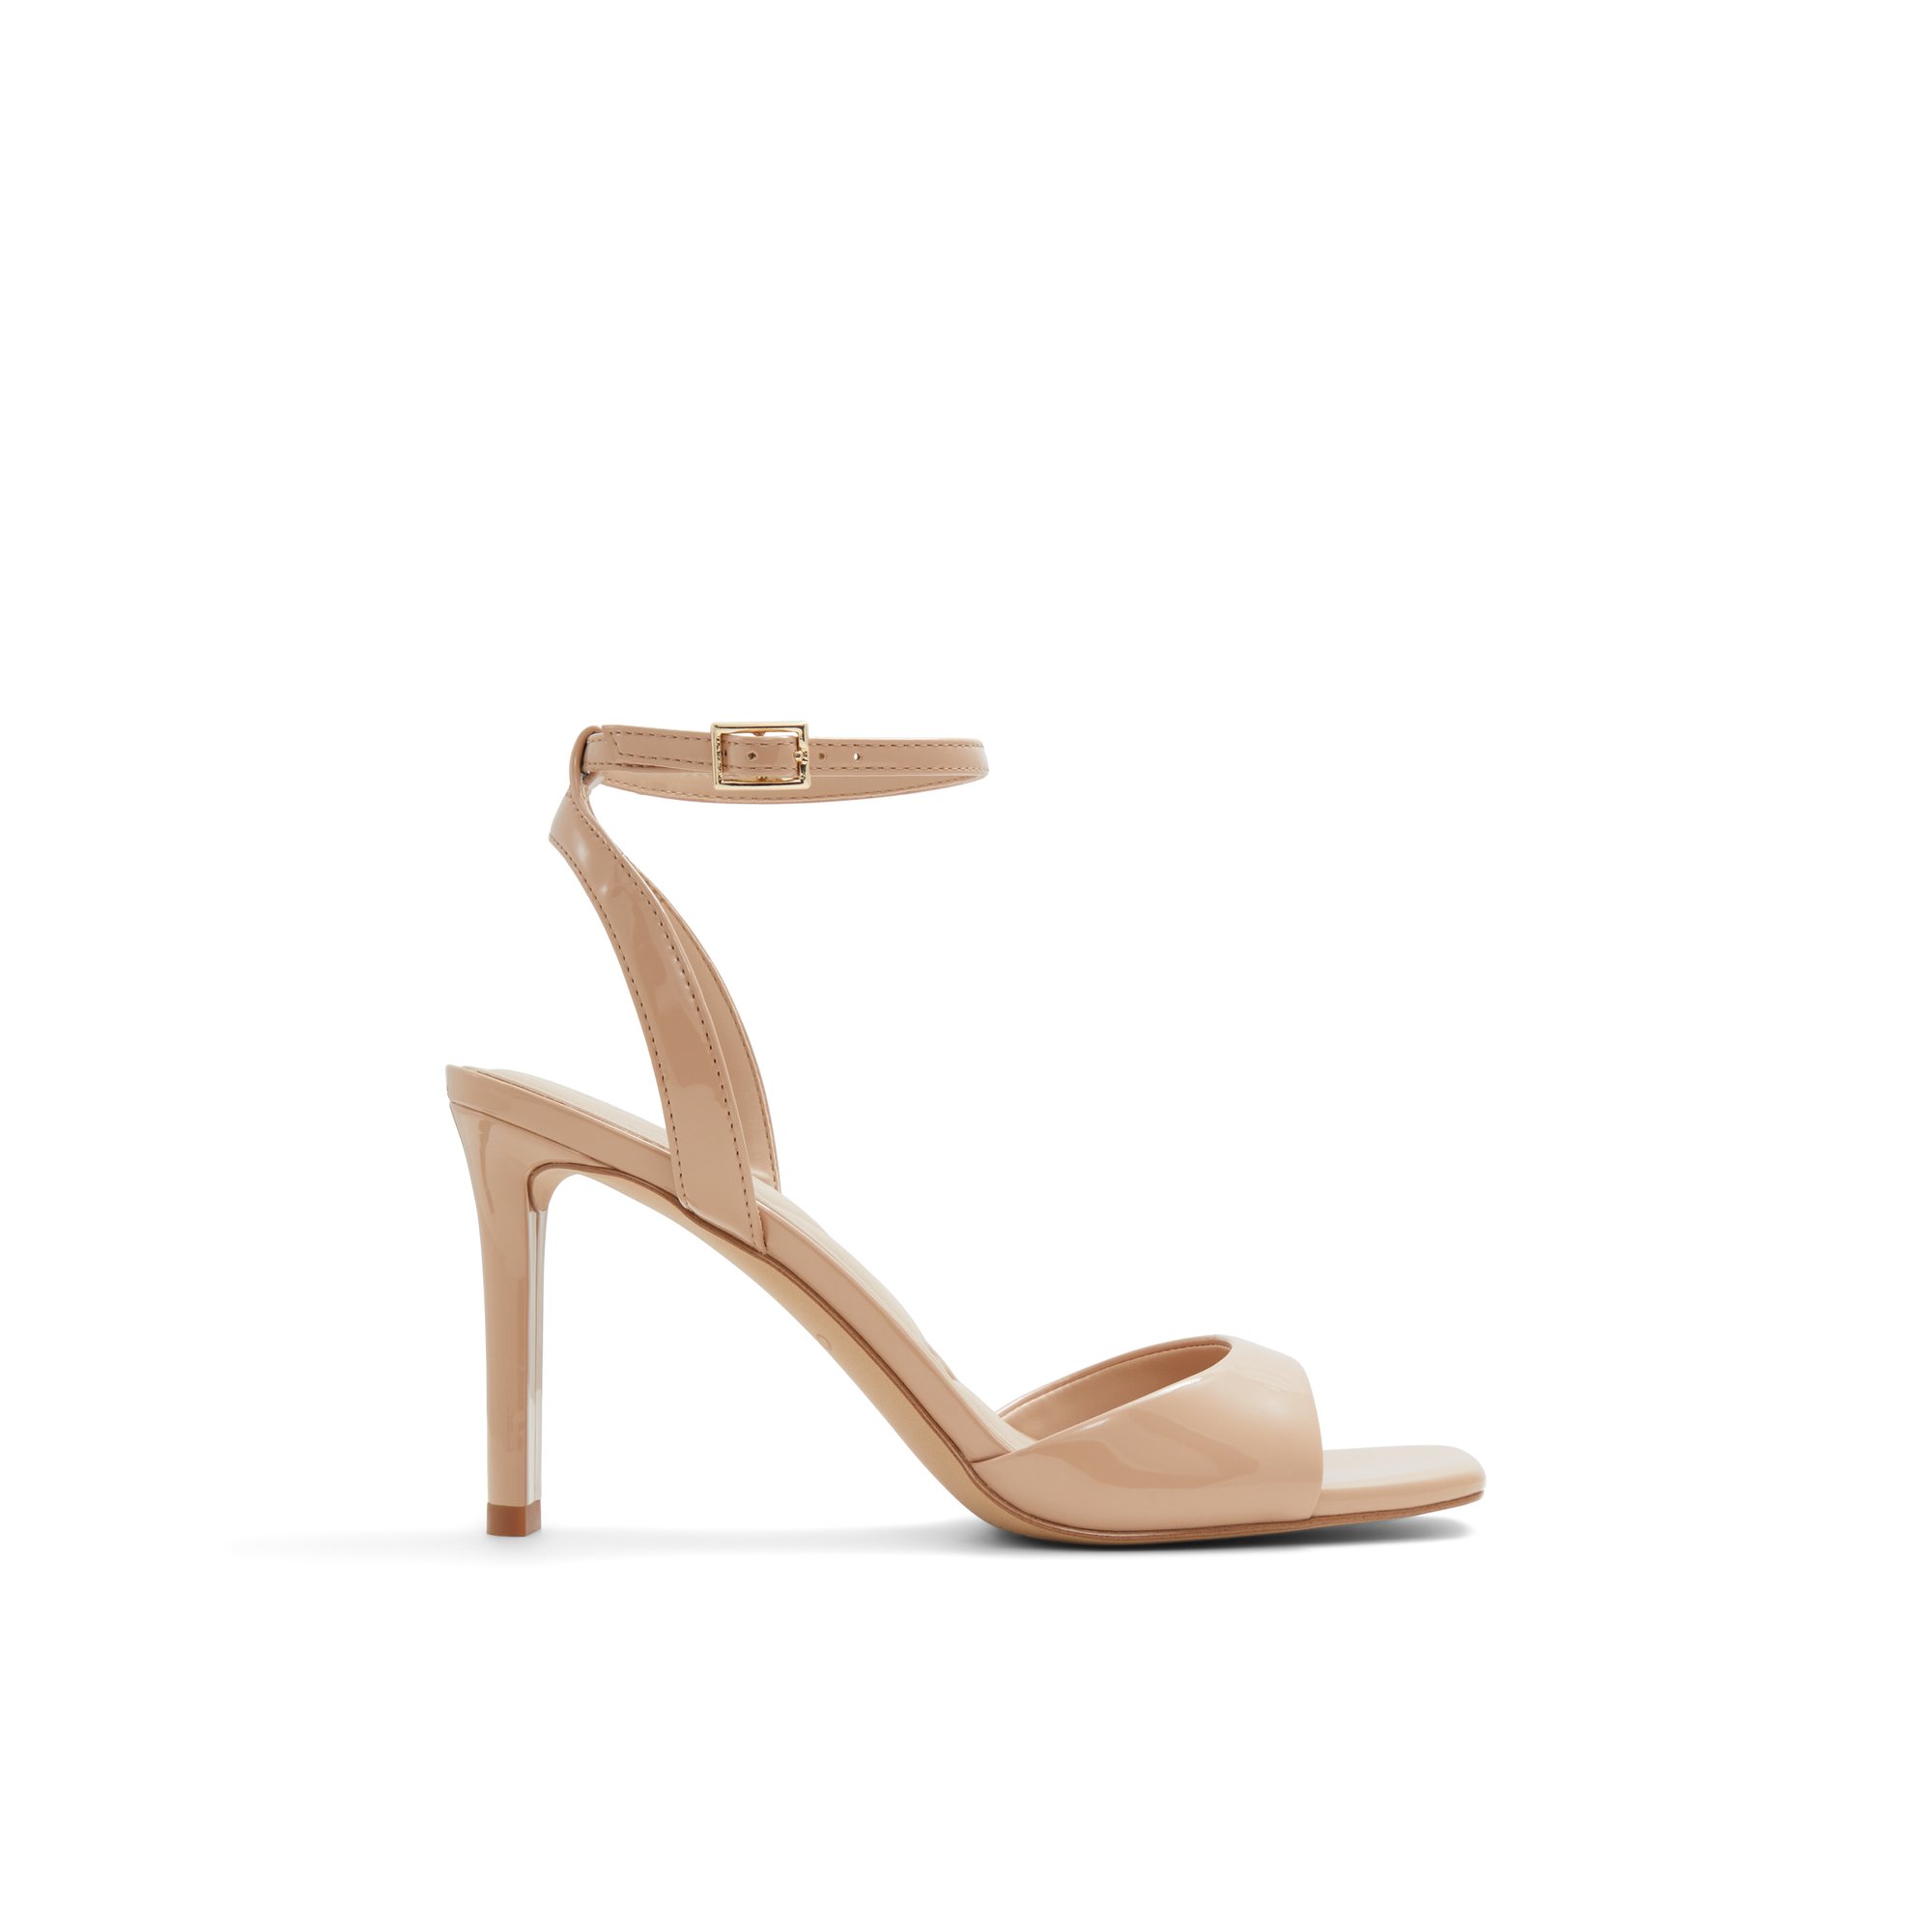 ALDO Sake - Women's Sandals Strappy - Brown